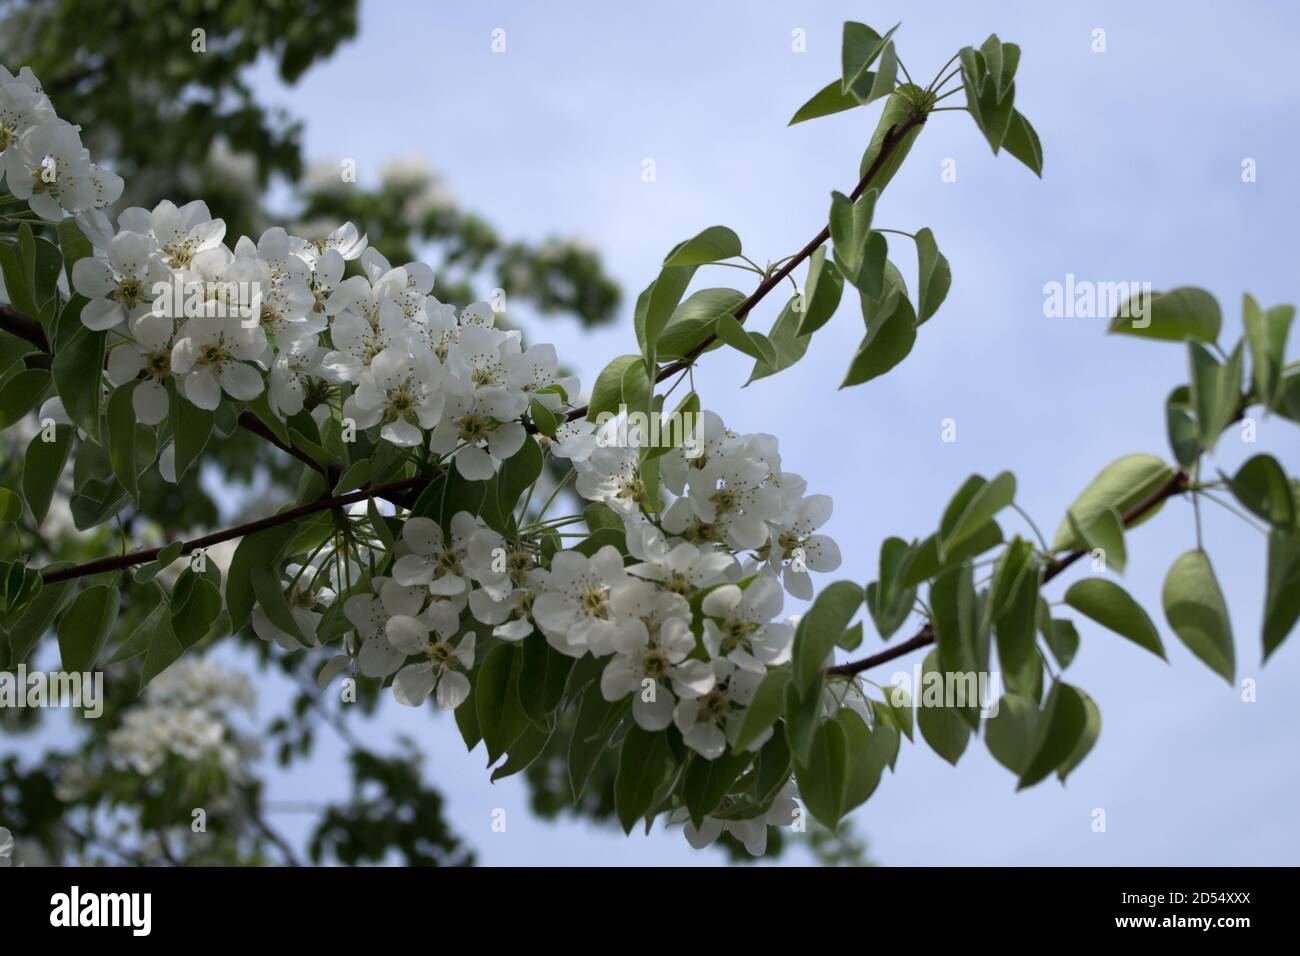 Blühende geschwungene Zweige von Aprikosenbaum mit weißen flauschigen bedeckt Fünfblättrige Blumen und grüne Blätter gegen den blauen Himmel im Frühling Morgen Stockfoto